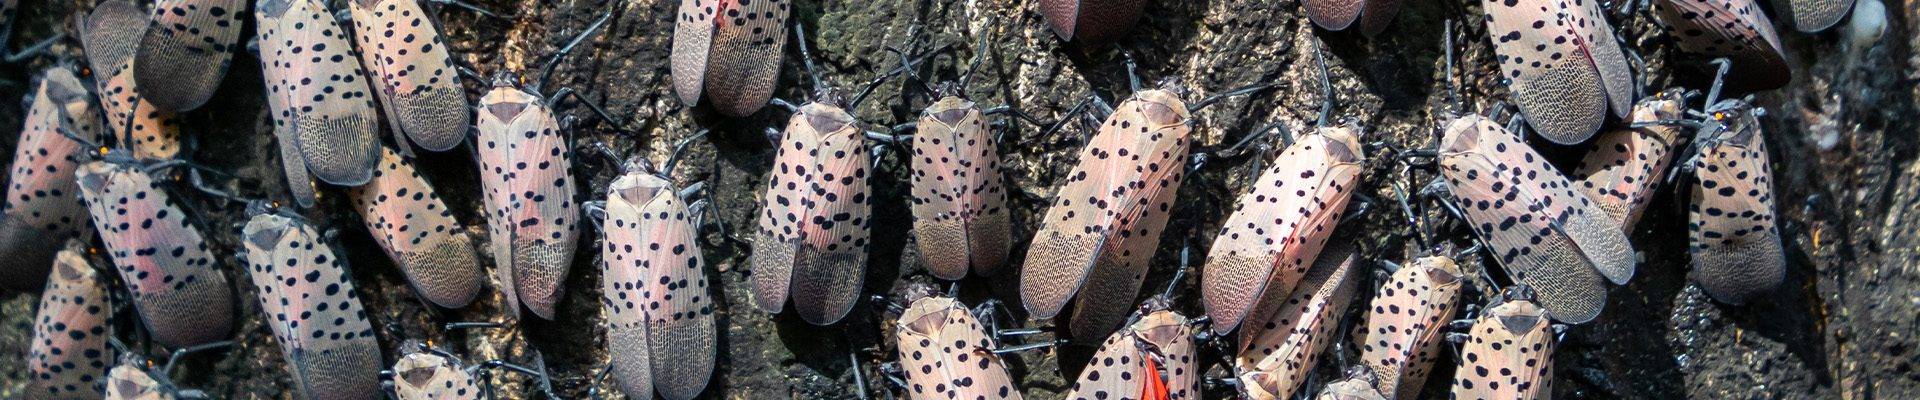 Jersey Shore Spotted Lanternflies Extermination Services 